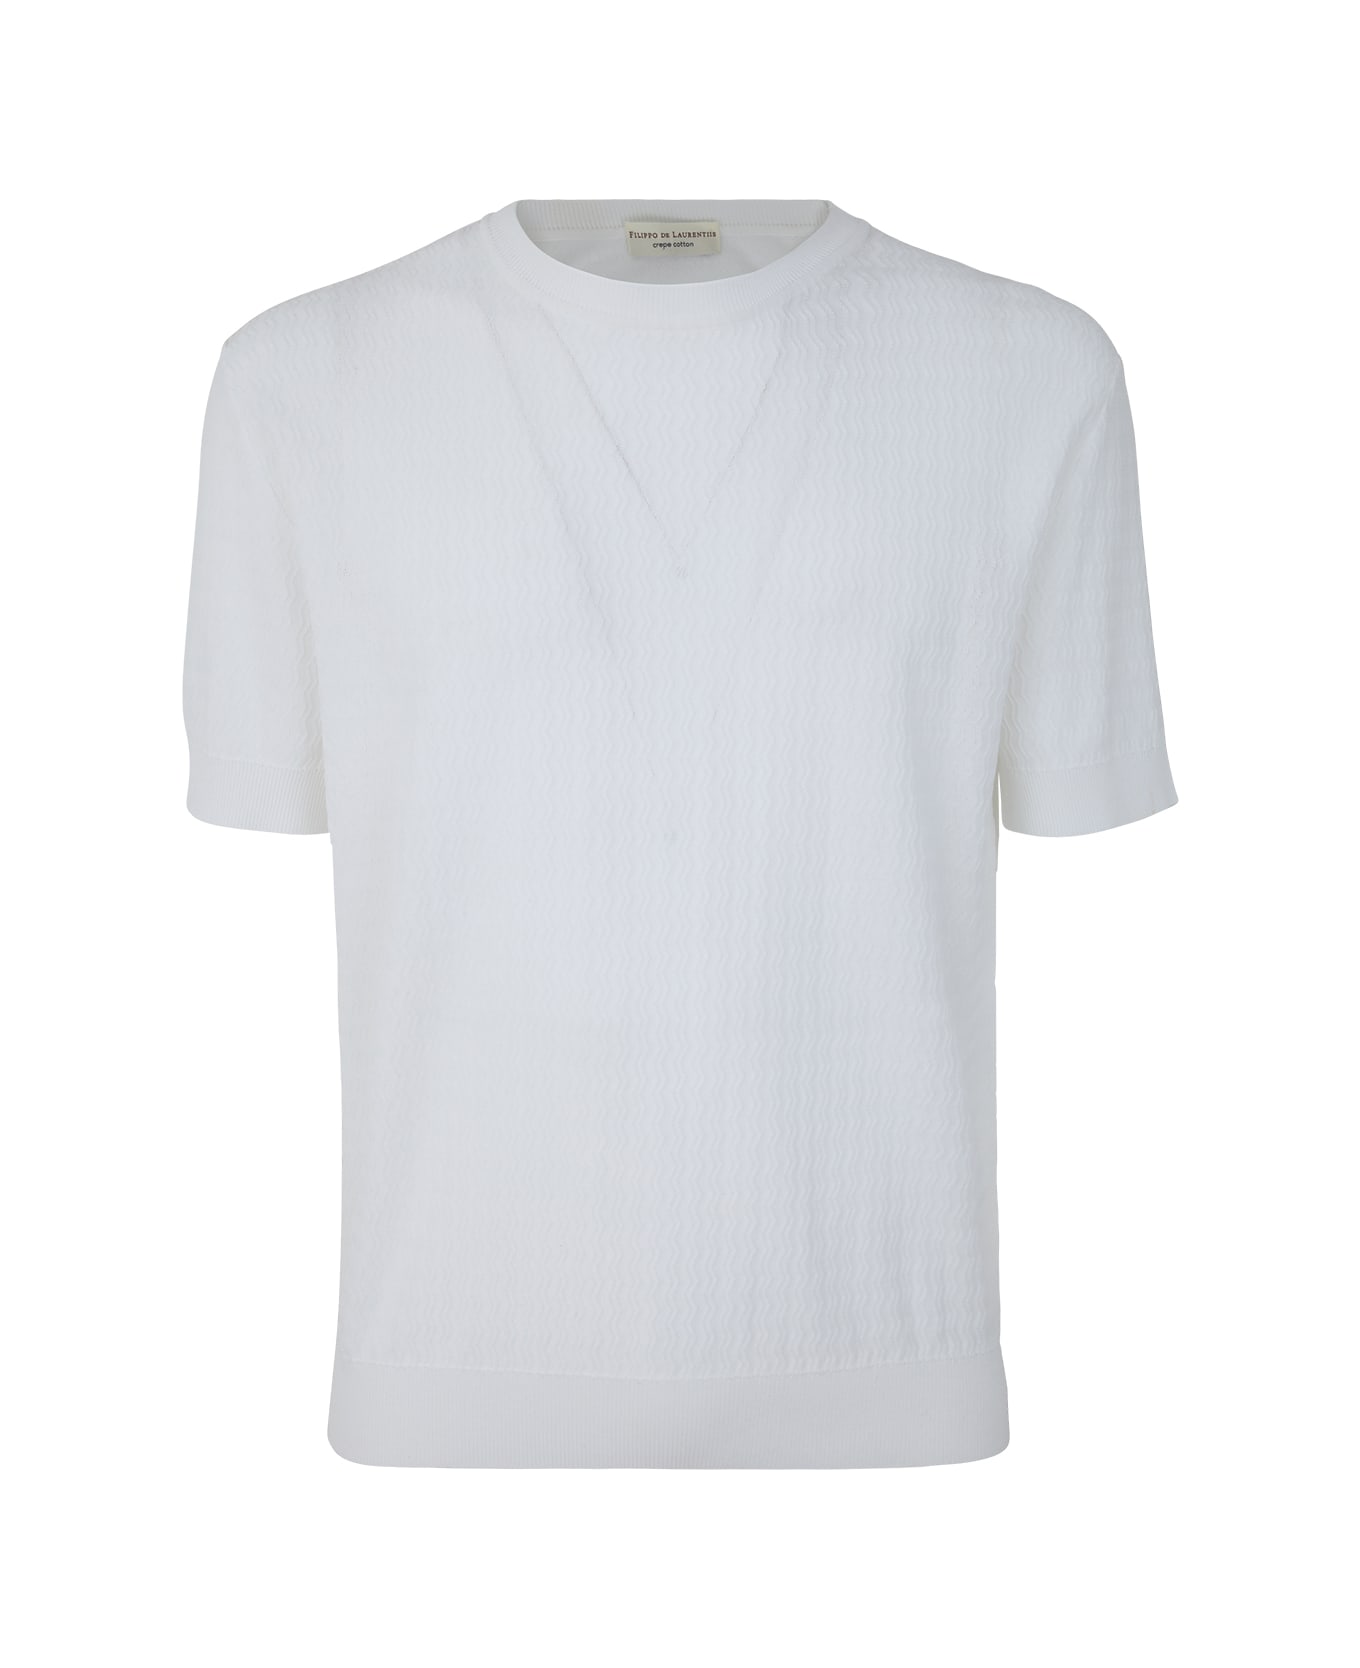 Filippo De Laurentiis Short Sleeve Over Pullover - White